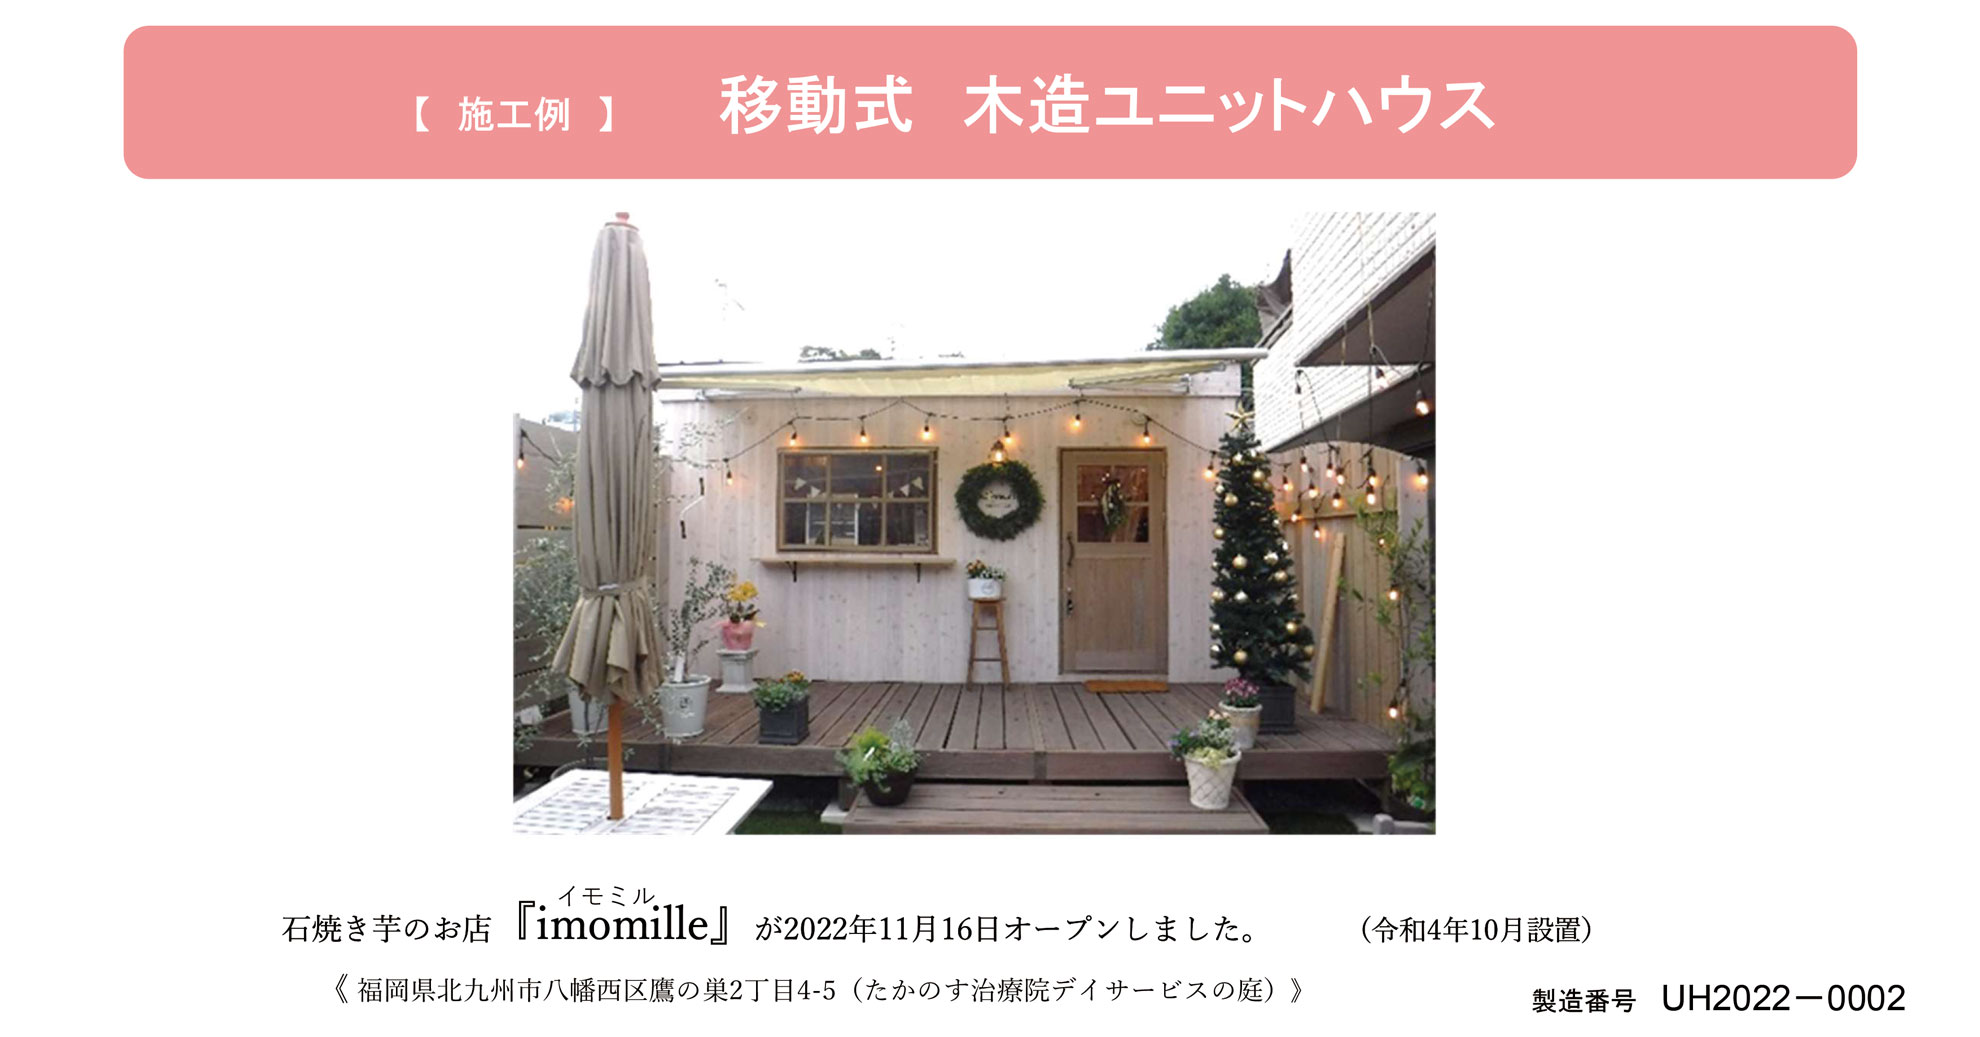 石焼き芋のお店『imomille(イモミル)』が2022年11月16日オープンしました